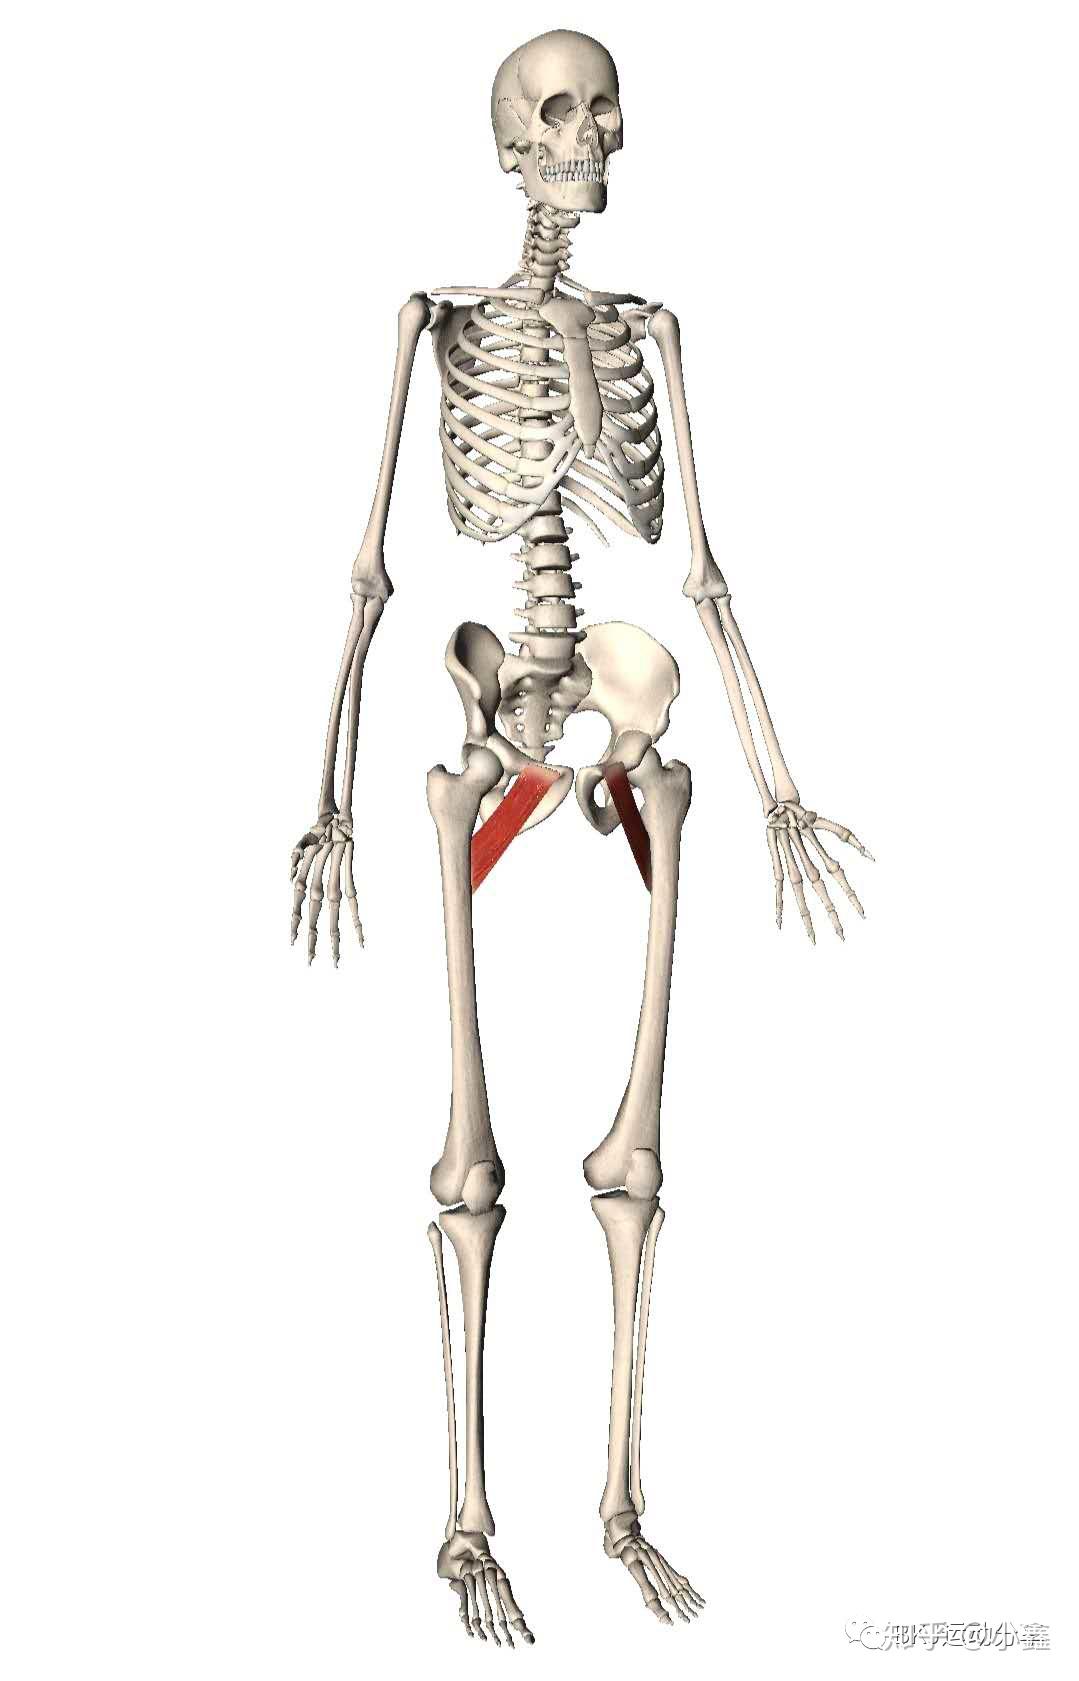 耻骨肌是大腿内侧肌肉中位置最高的肌肉,位于腹股沟的褶皱深处